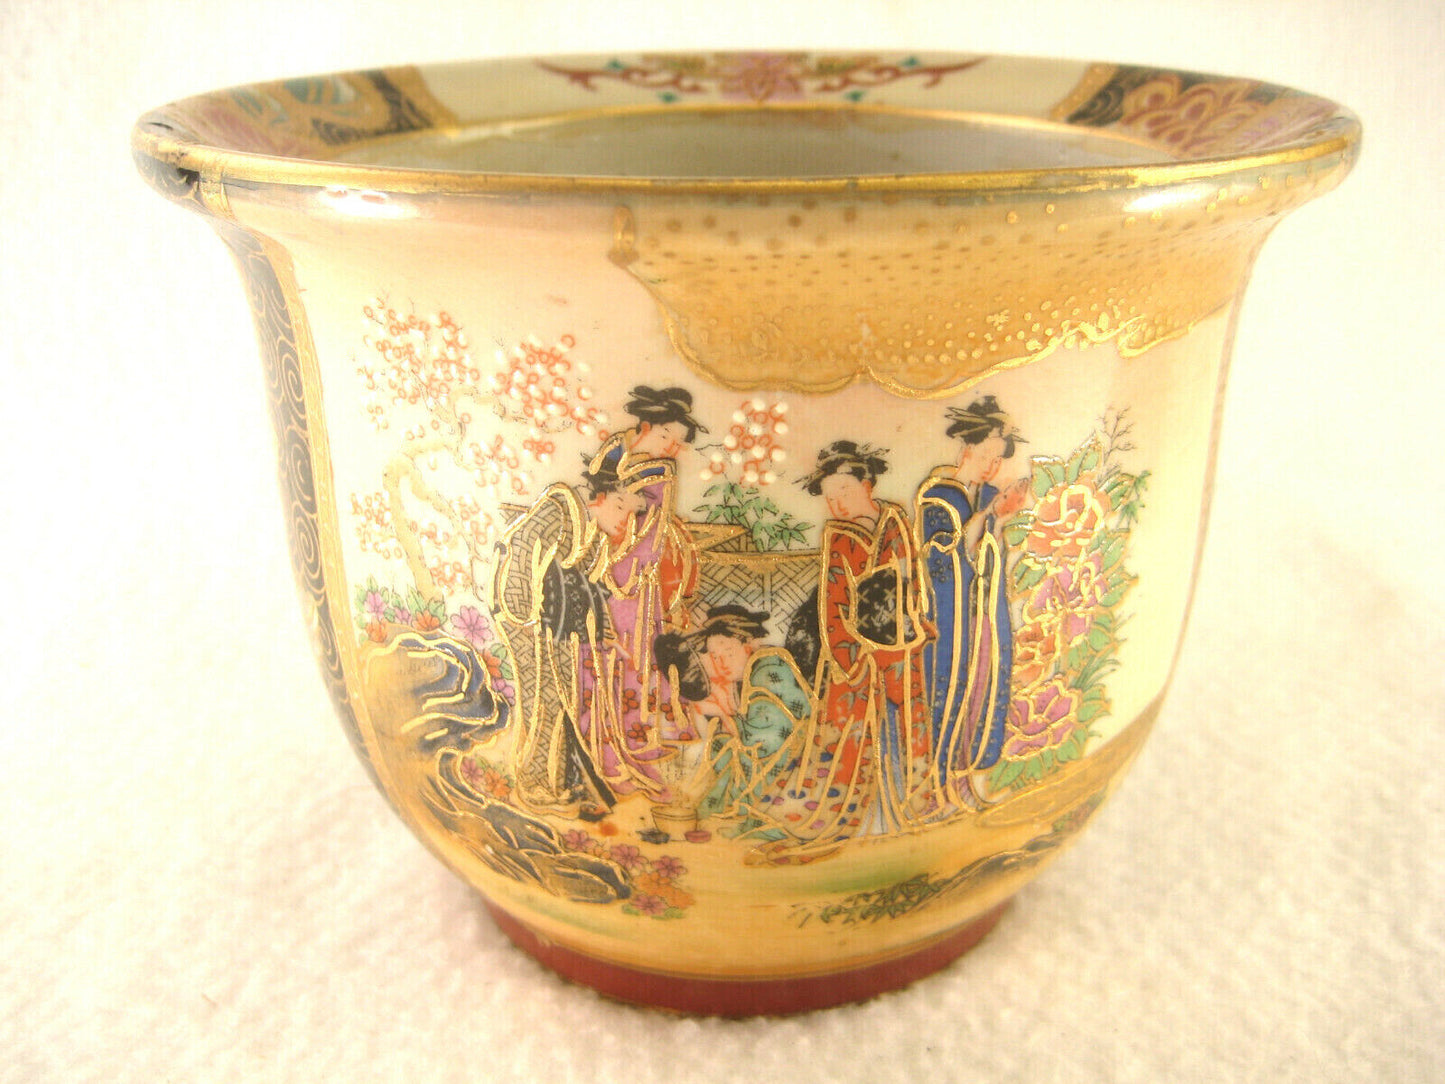 Vintage Japanese Satsuma Style Painted W/ Gold Ceramic Geisha Pot 5.5"